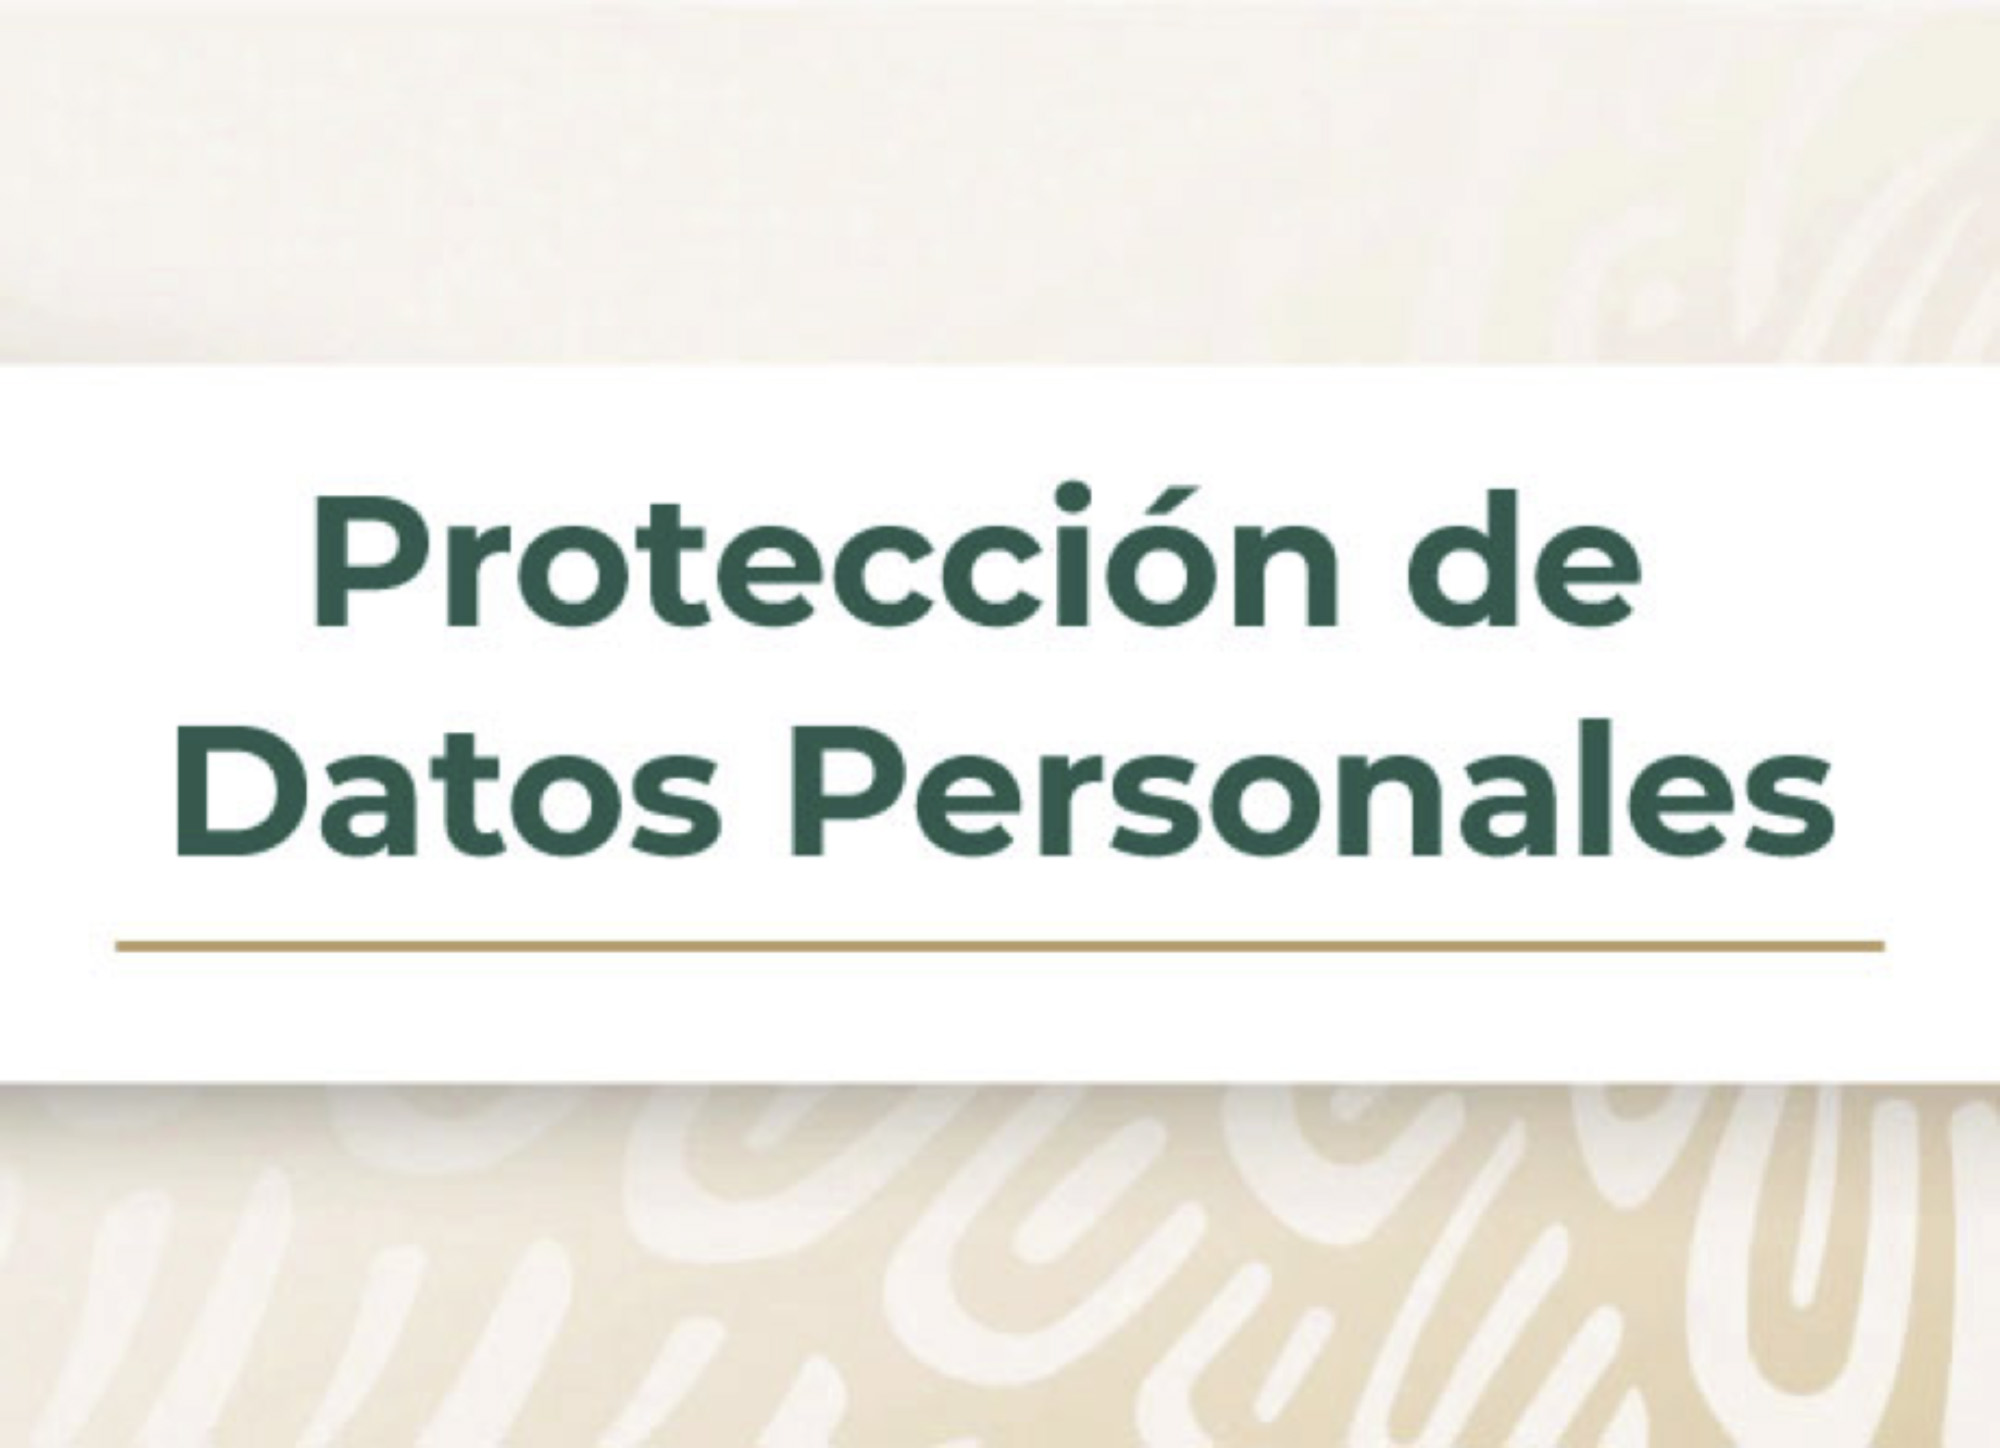 Protección de Datos Personales